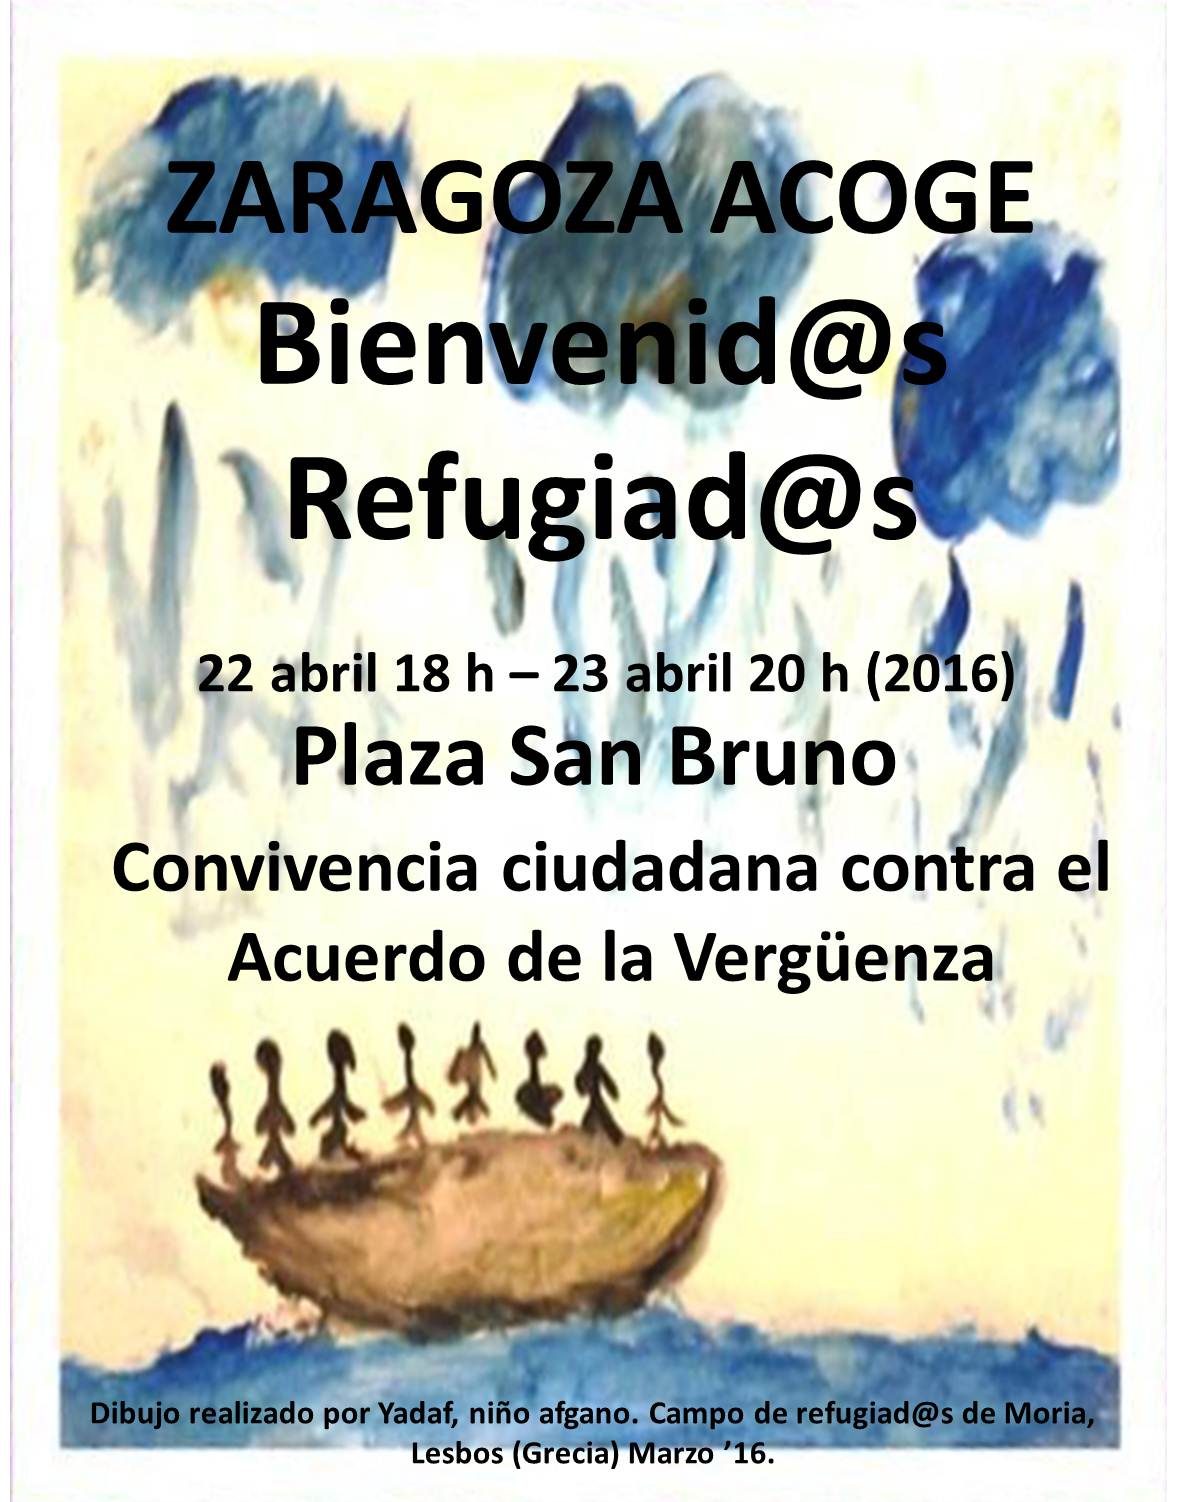 Zaragoza Acoge - Bienvenid@s Refugiad@s